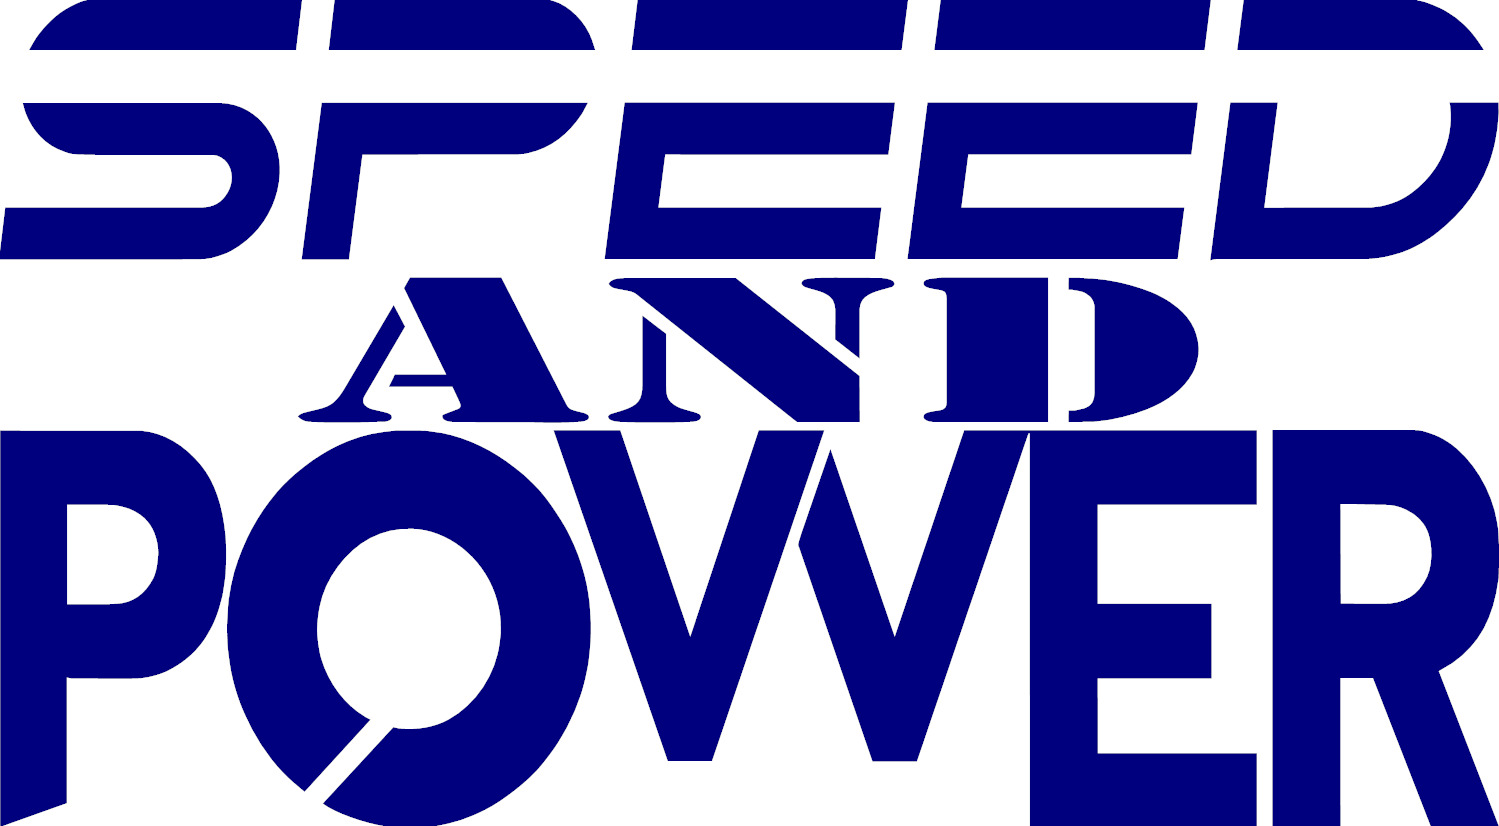 Speed & Power Vinyl decal Grand Tour Top Gear Clarkson Jezza 2sz/12clr 